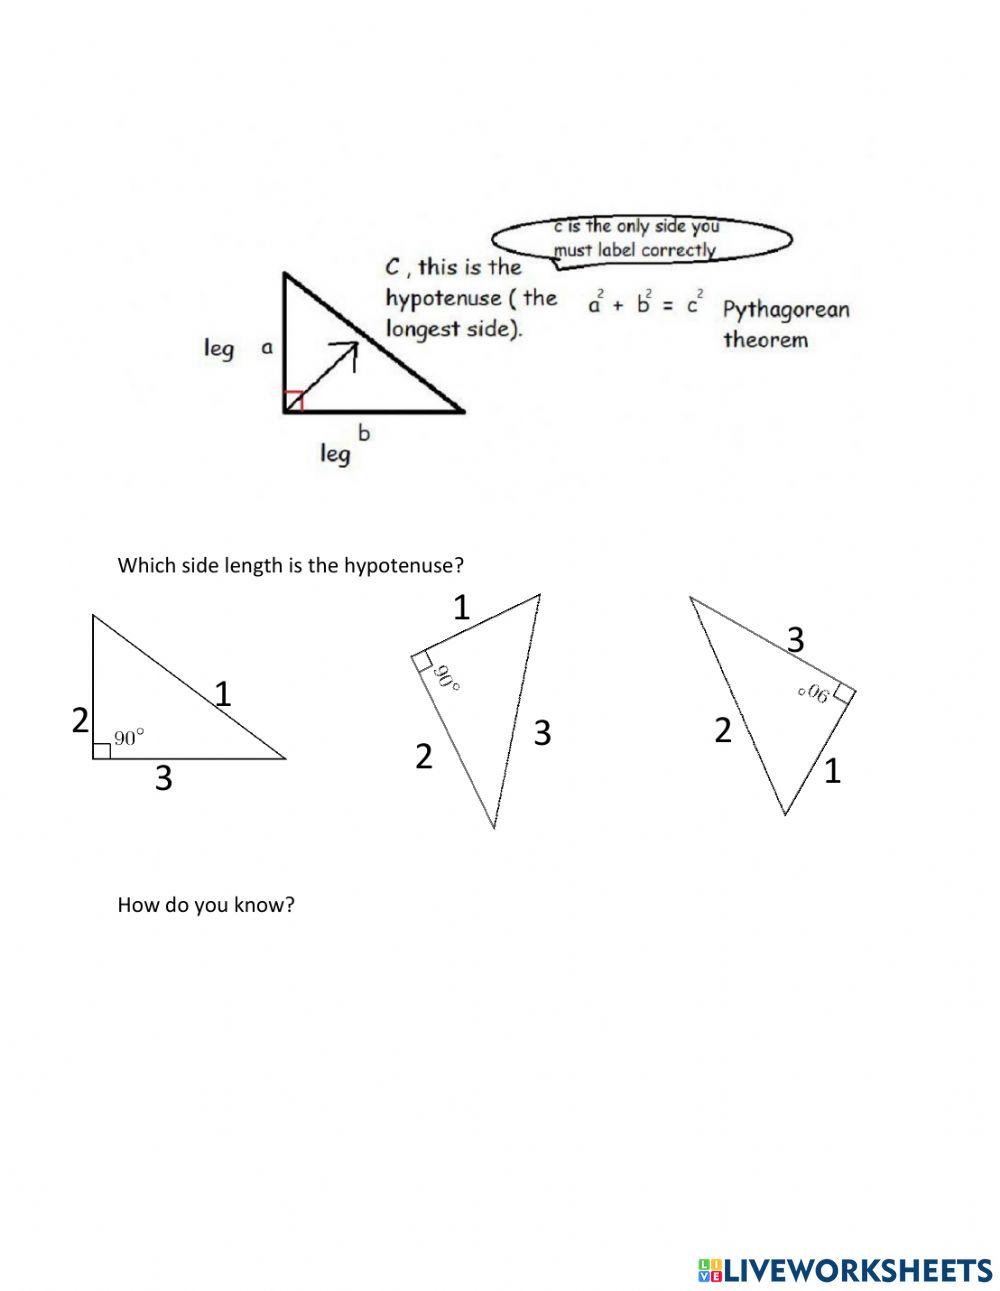 PythagoreanTheorem